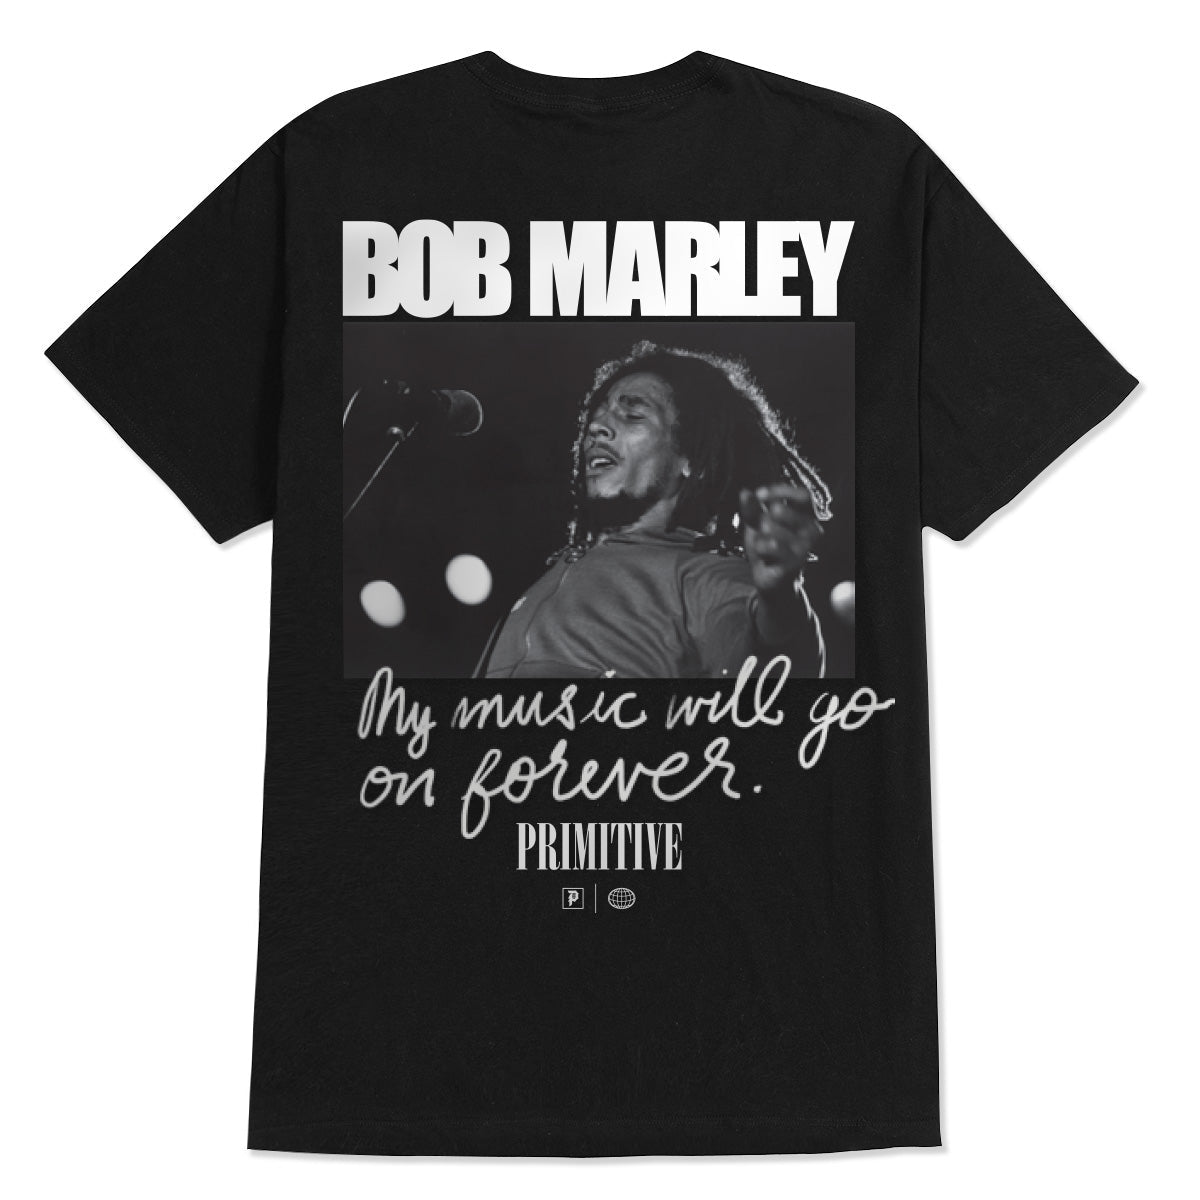 Primitive x Bob Marley Forever T-Shirt - Black image 1